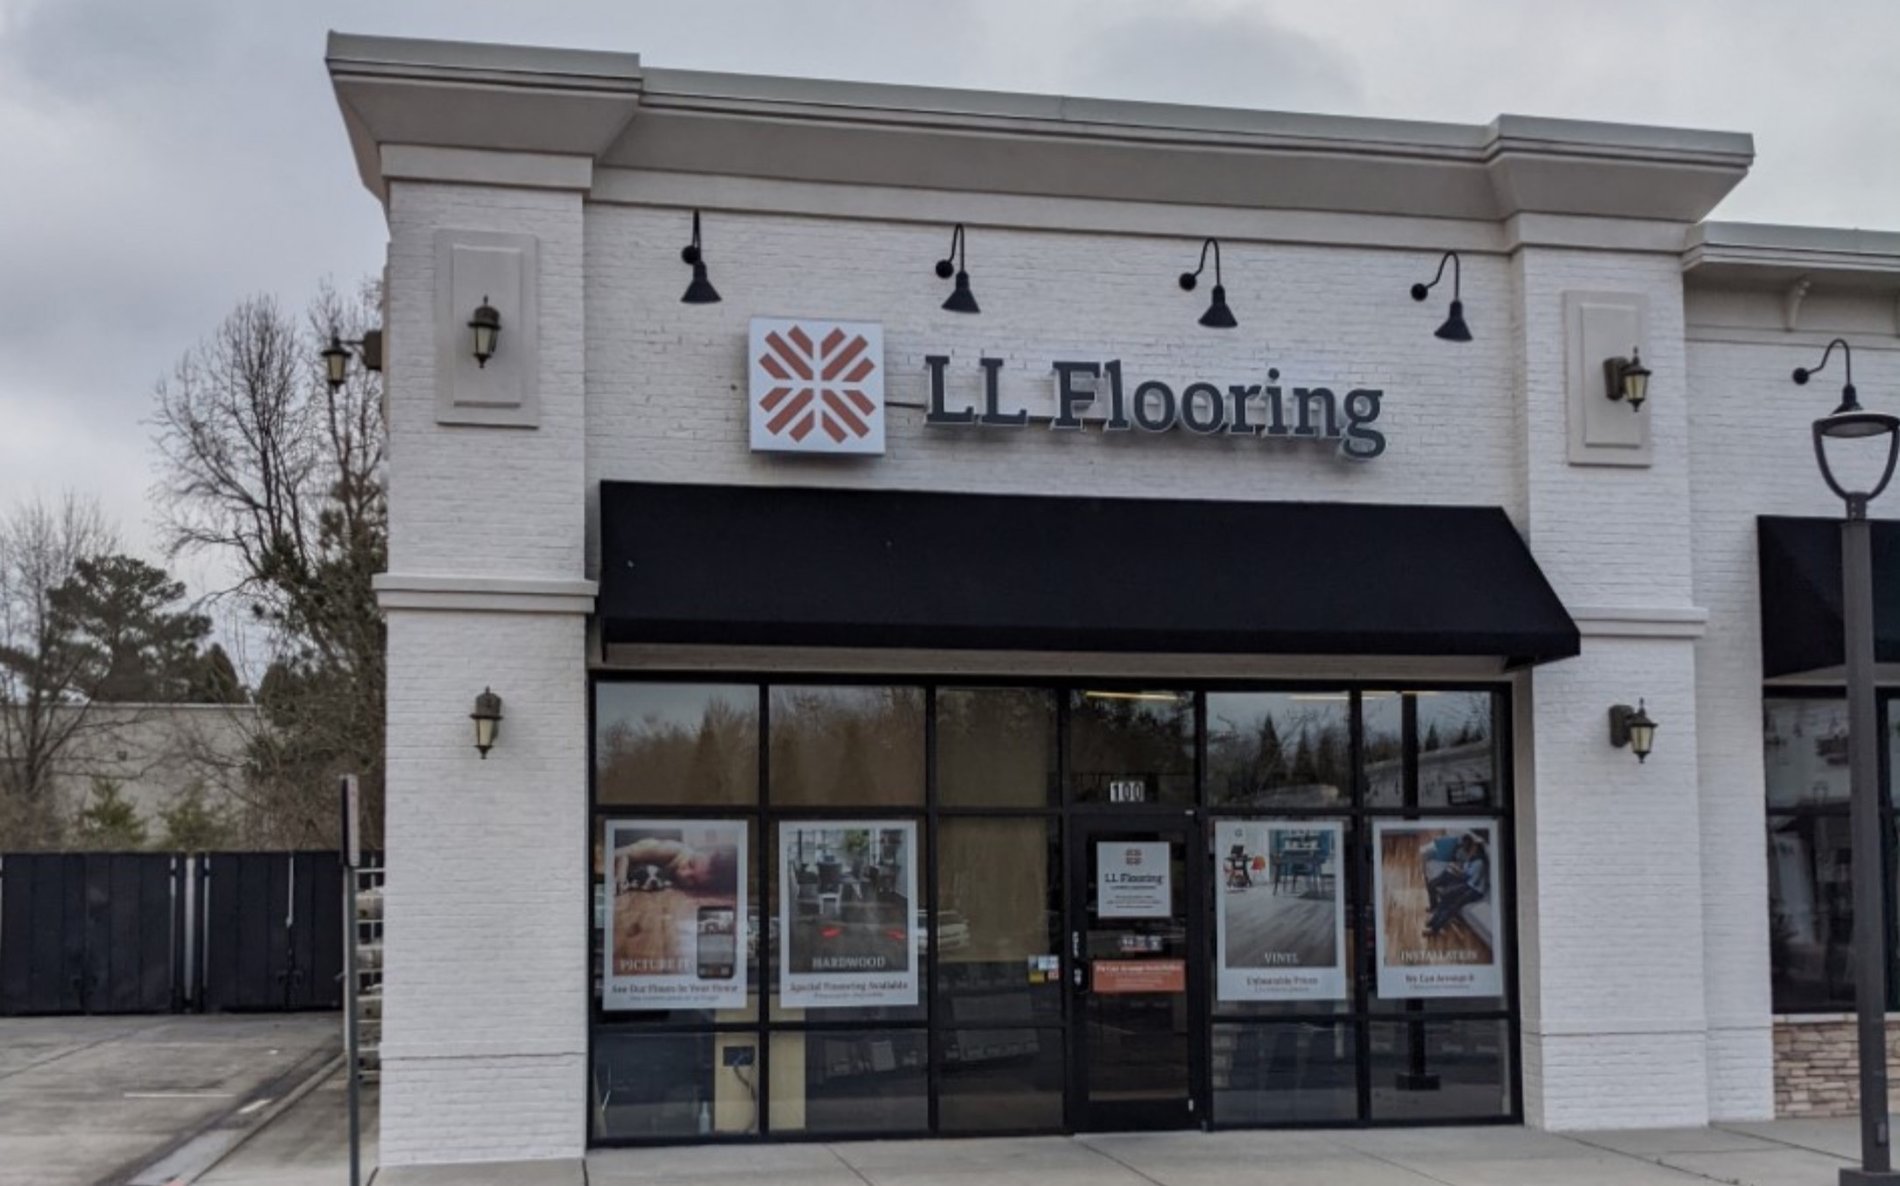 LL Flooring #1318 Alpharetta | 735 North Main Street | Storefront